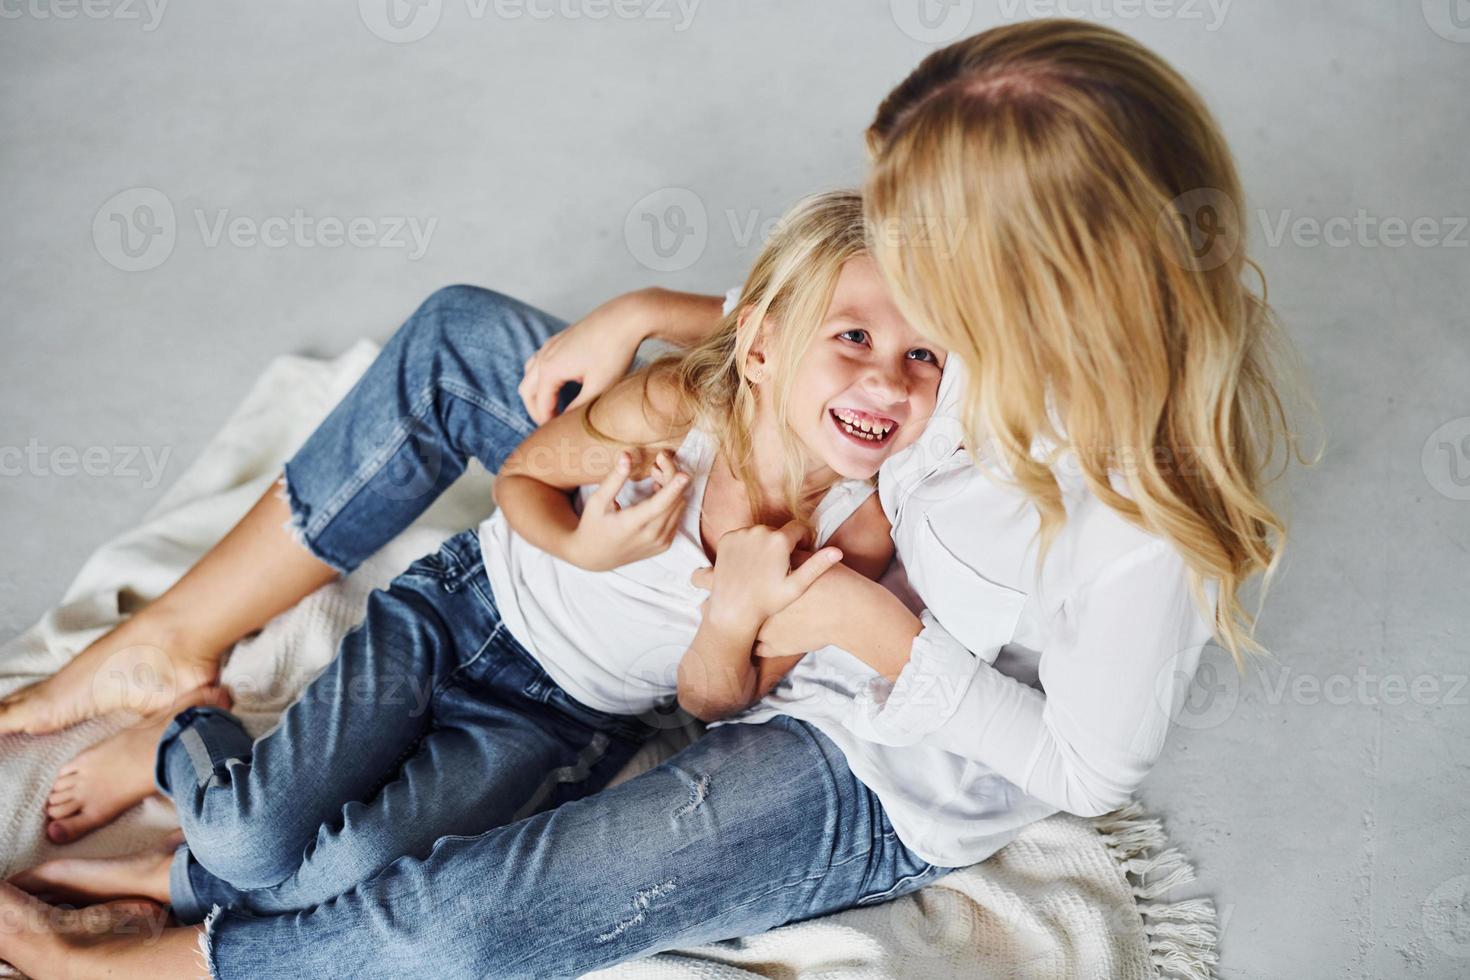 madre con su hija juntas está en el suelo en el estudio con antecedentes blancos foto